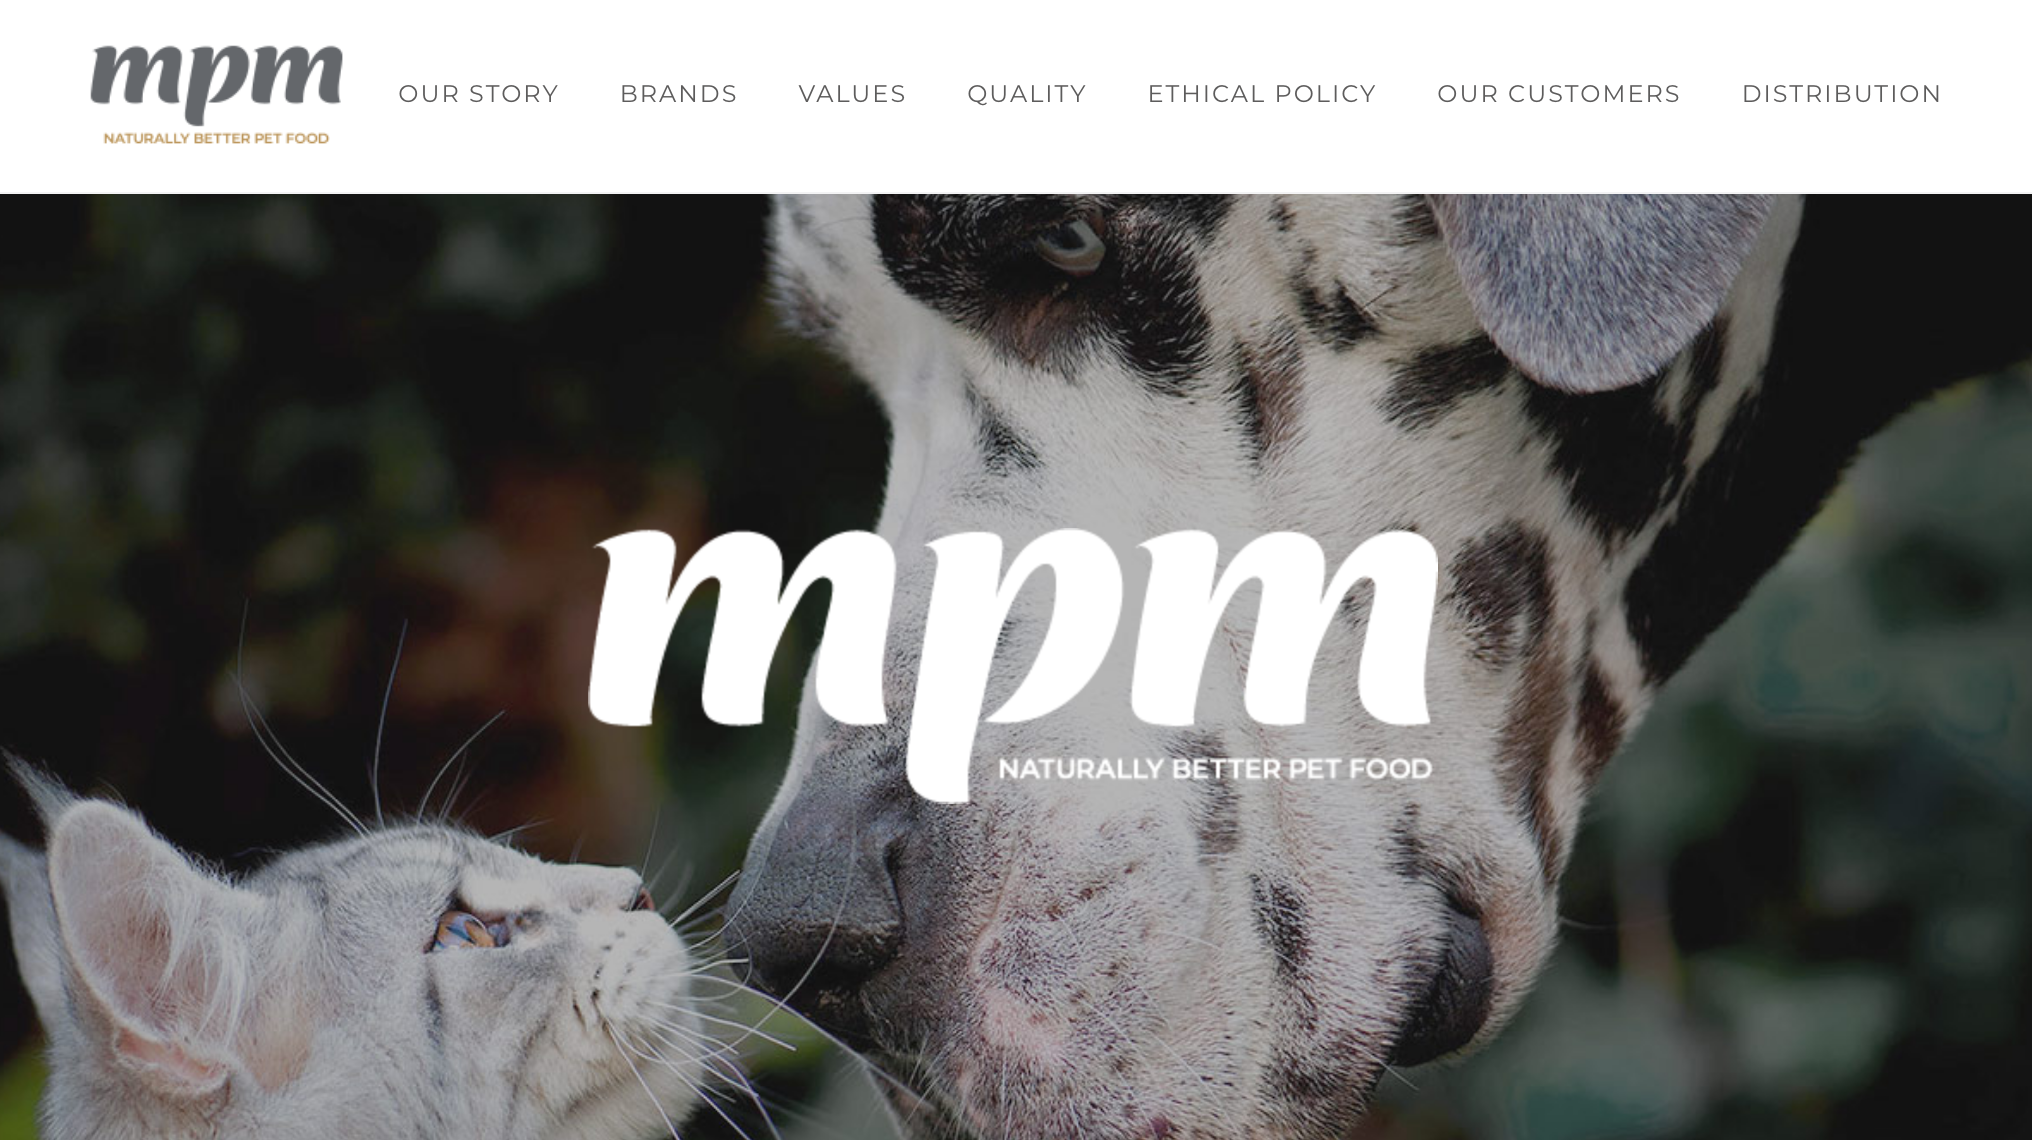 私募基金 3i 以1.25亿英镑收购英国天然宠物食品公司 MPM 多数股权